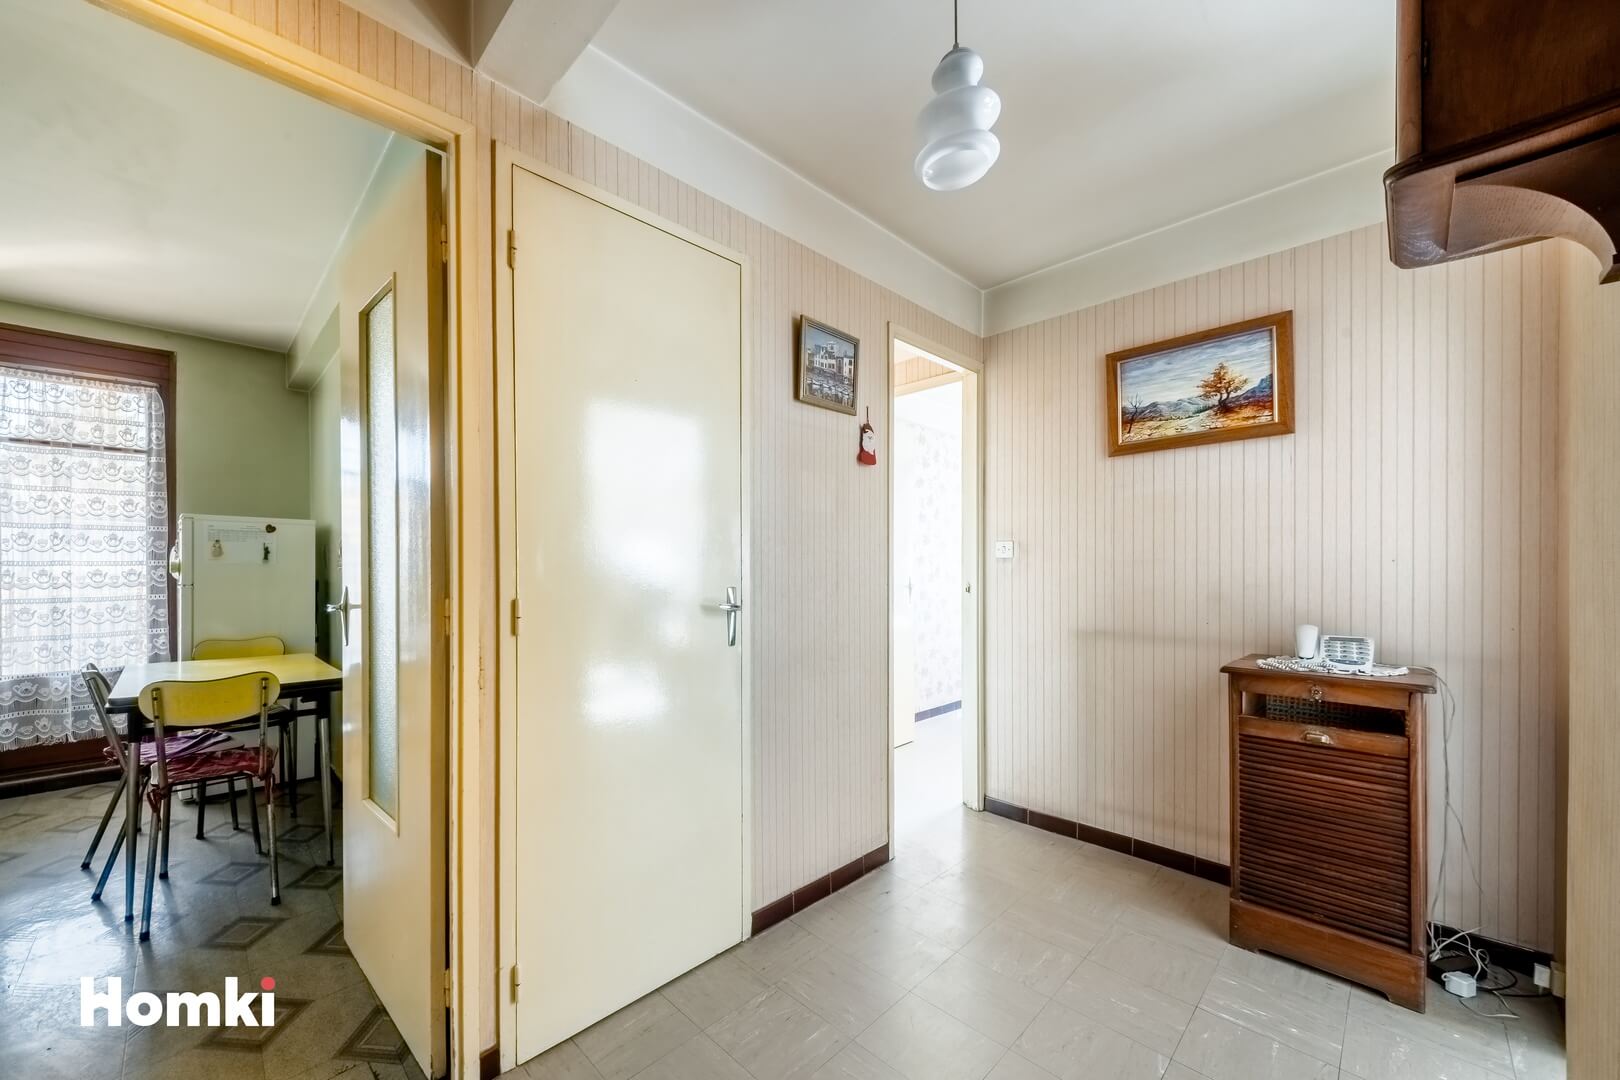 Homki - Vente Appartement  de 65.0 m² à Aubagne 13400